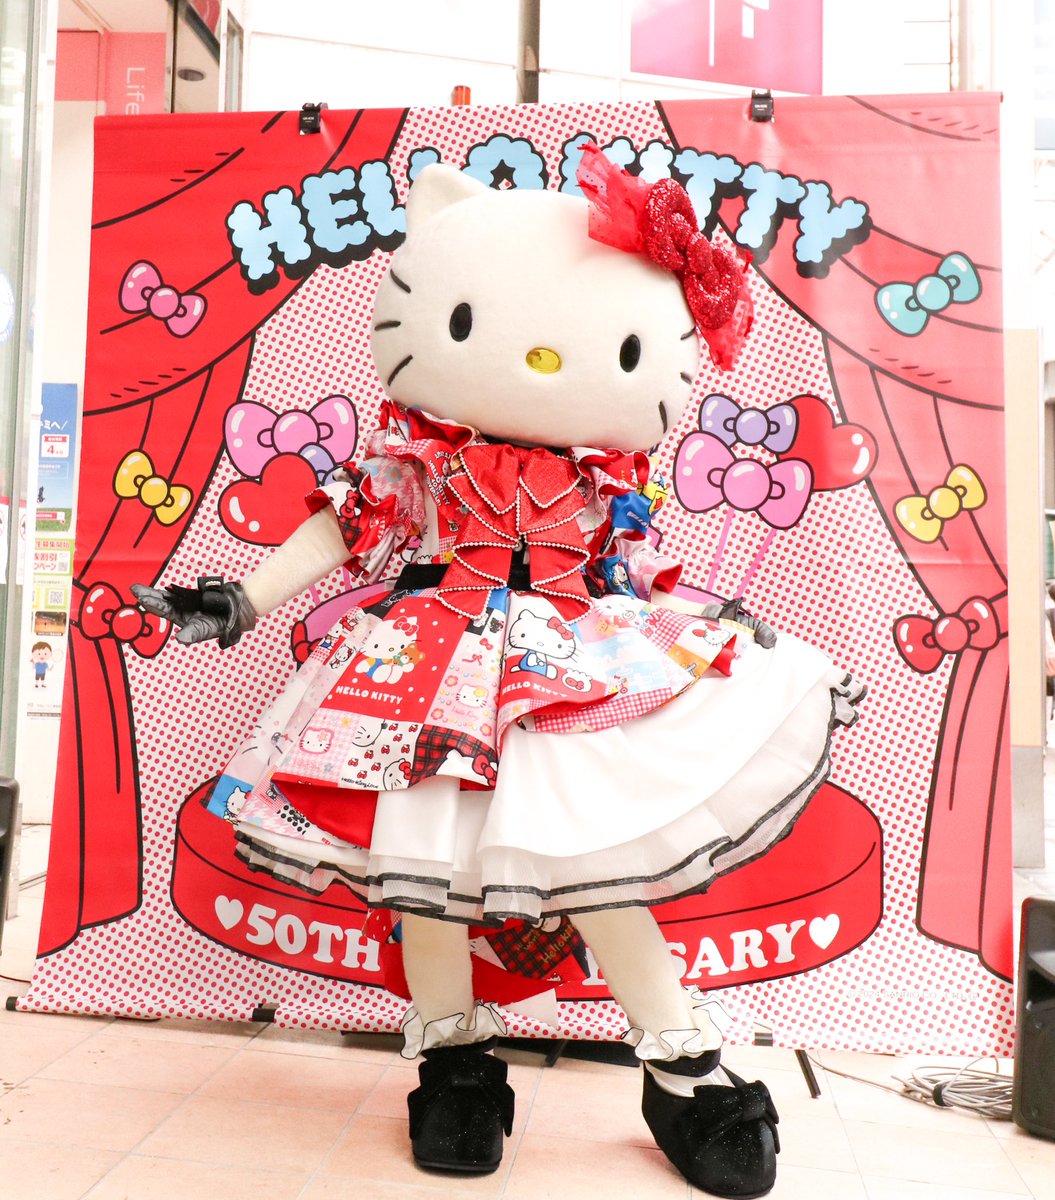 DAISO心斎橋に行ってきました🍎
キティちゃん50周年の衣装で来てくれて新しいグッズもたっっっくさん！！
最高に素敵なイベントでした🥹
#hellokitty50th 
#ハローキティ50周年